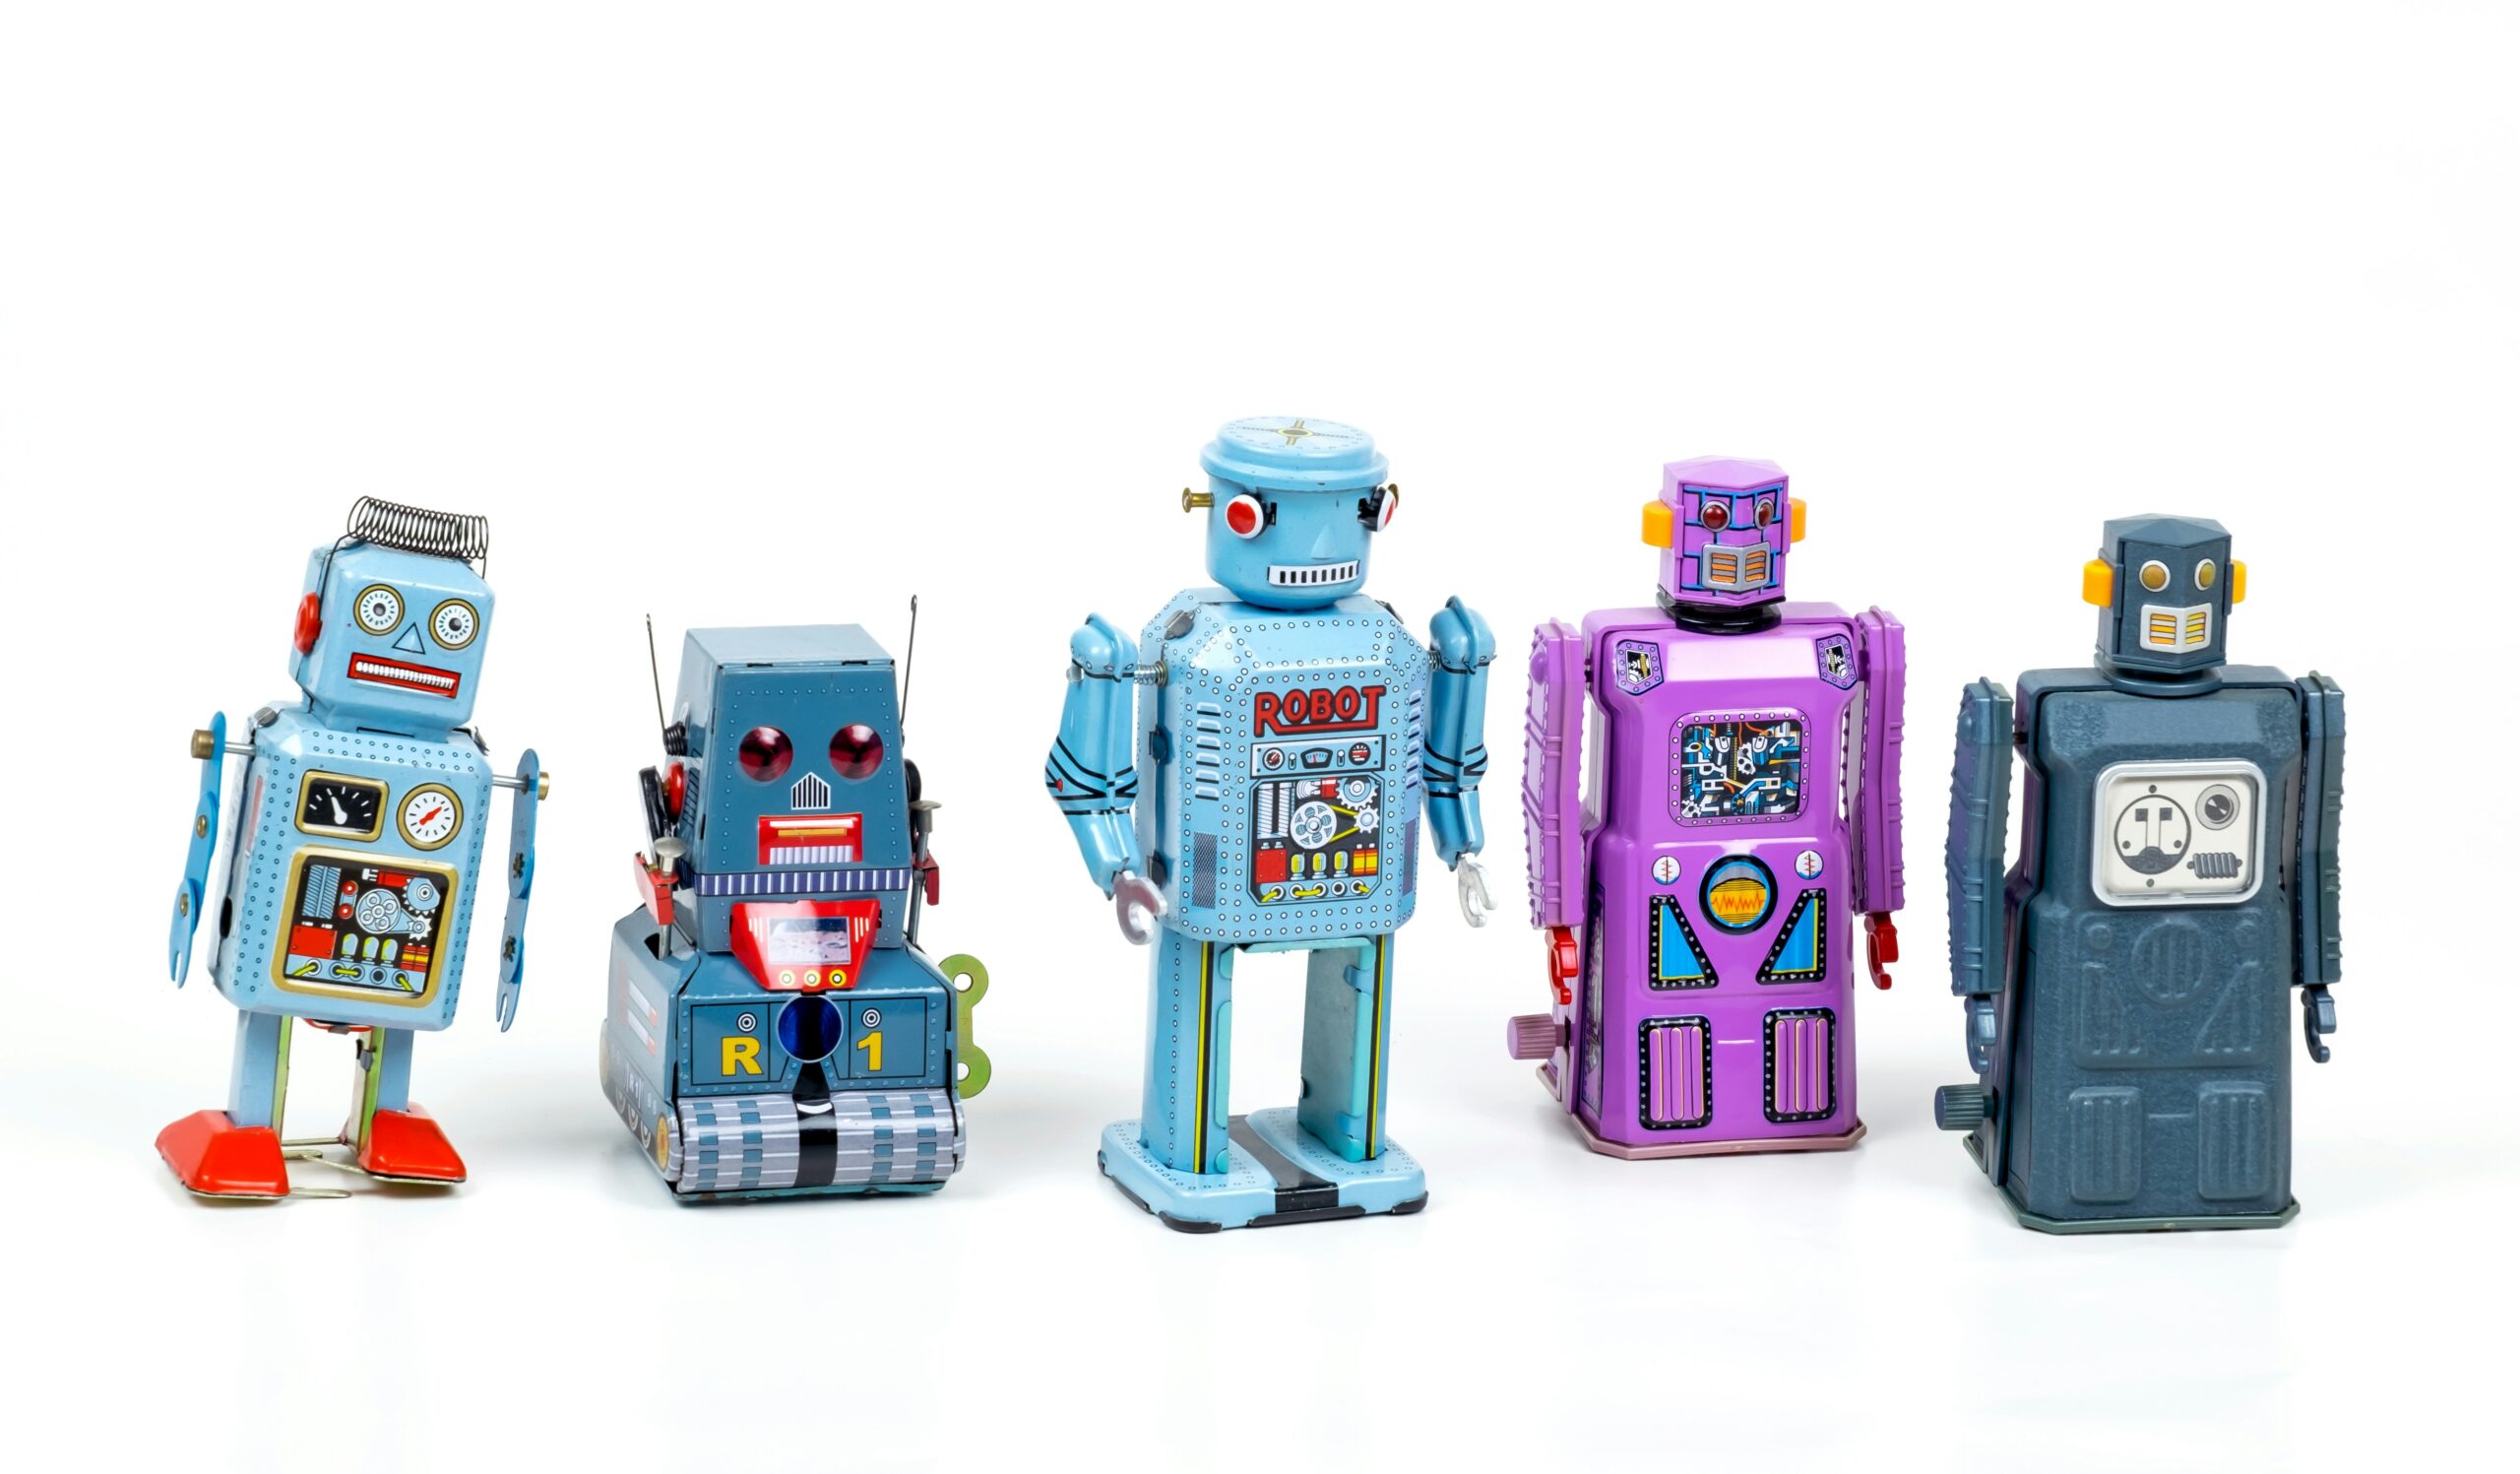 Des robots jouets alignés et un peu ridicules